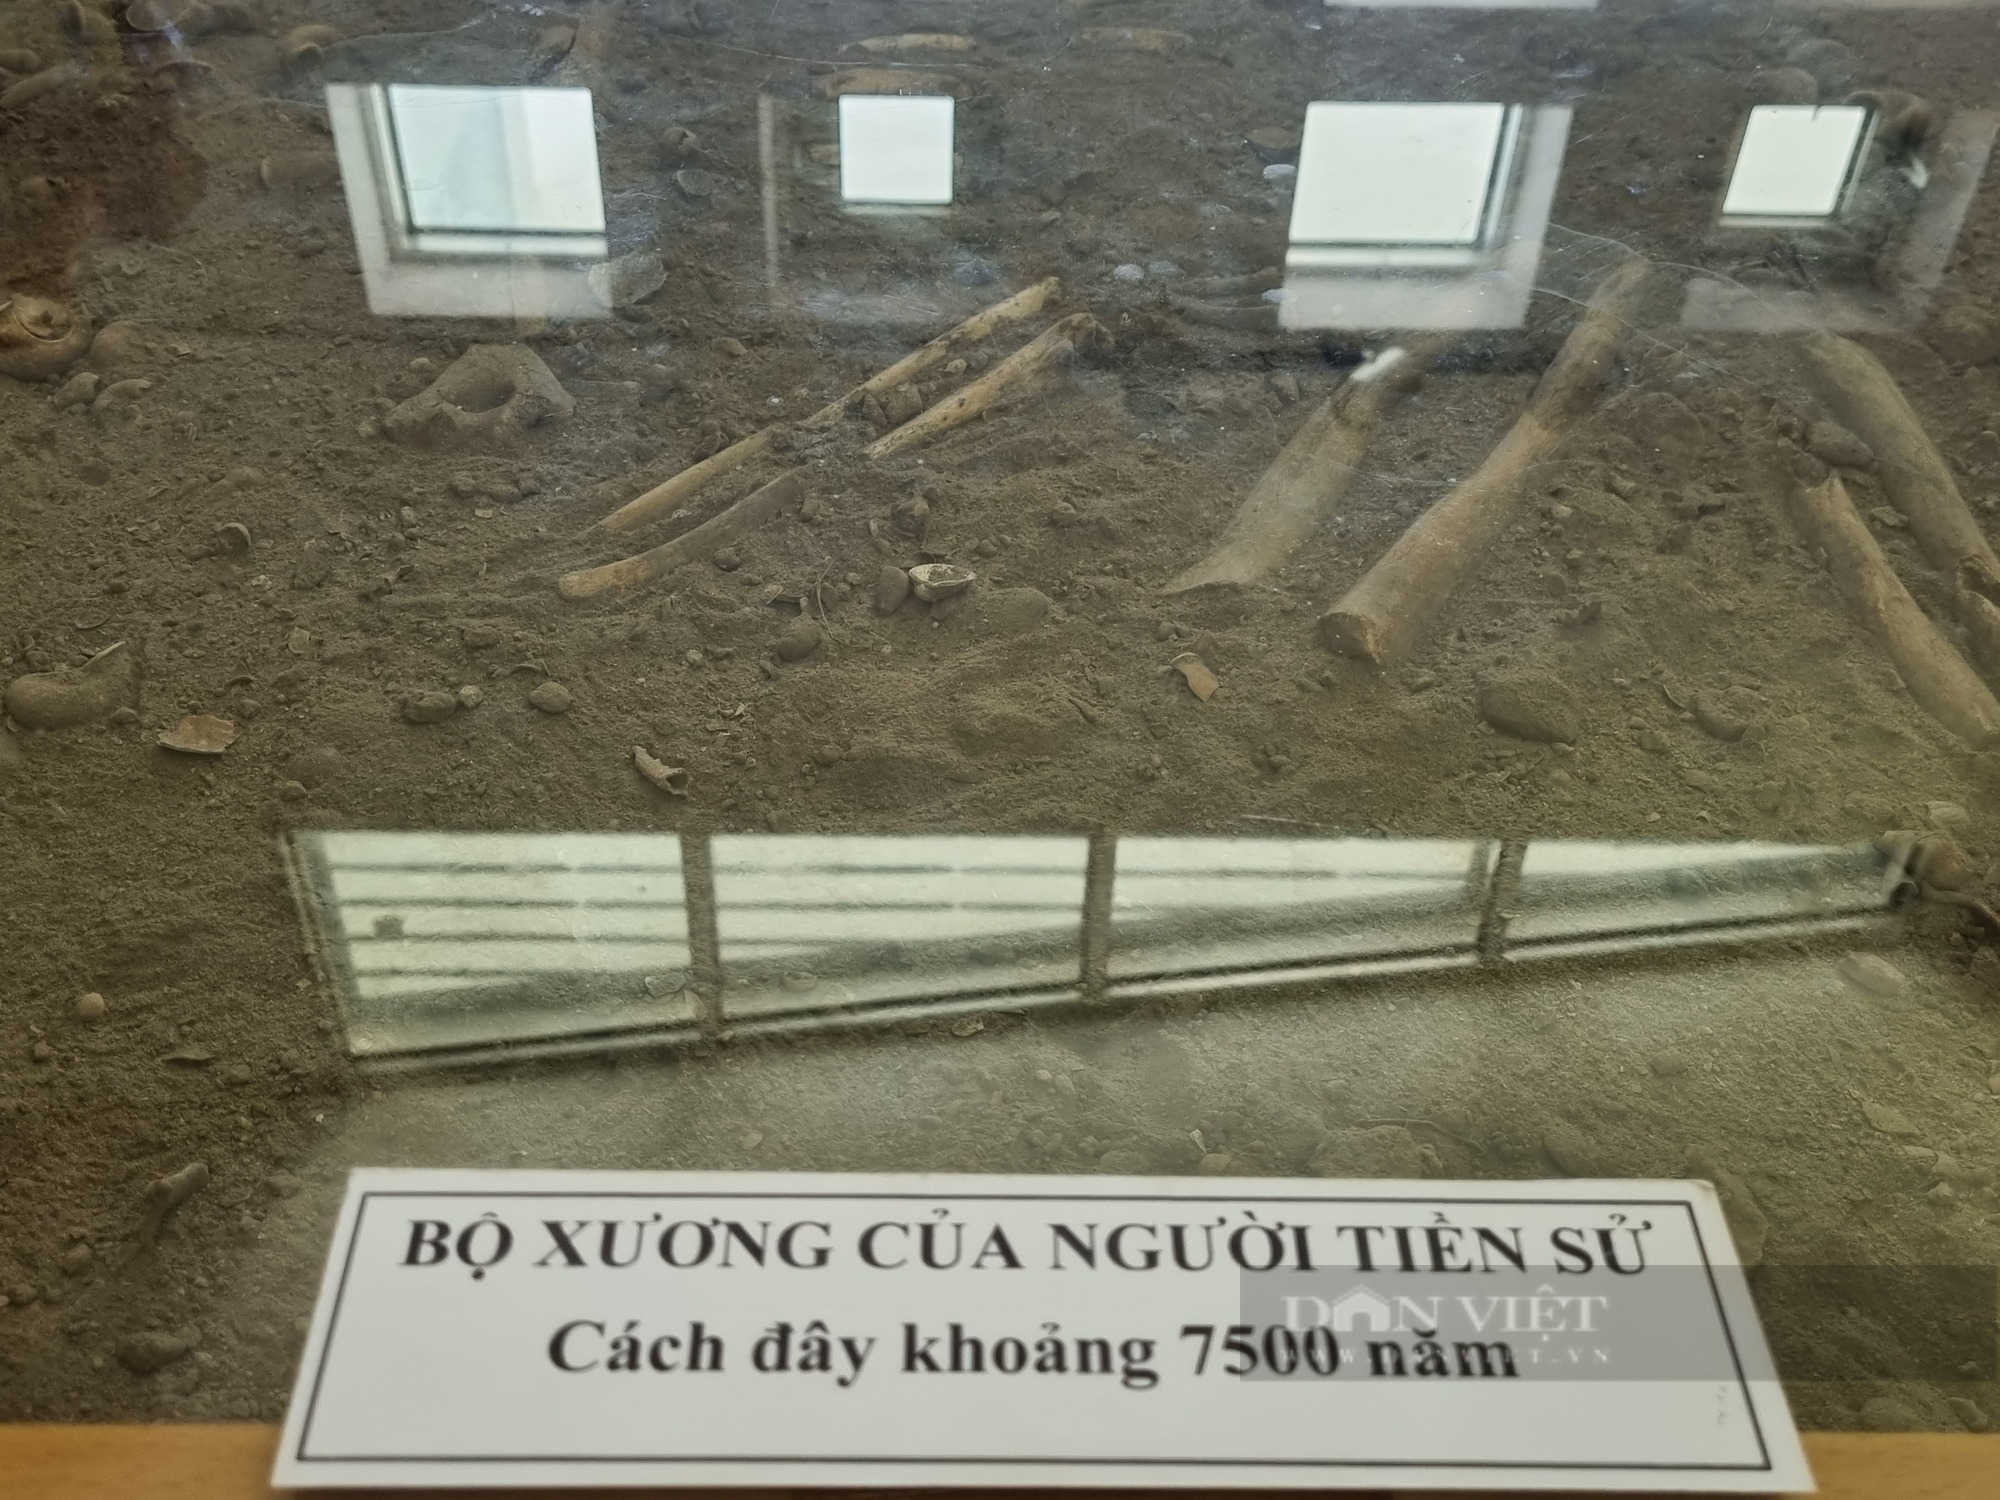 Bảo tàng Cúc Phương: Nơi lưu giữ bộ xương người tiền sử cách đây khoảng 7.500 năm - Ảnh 3.